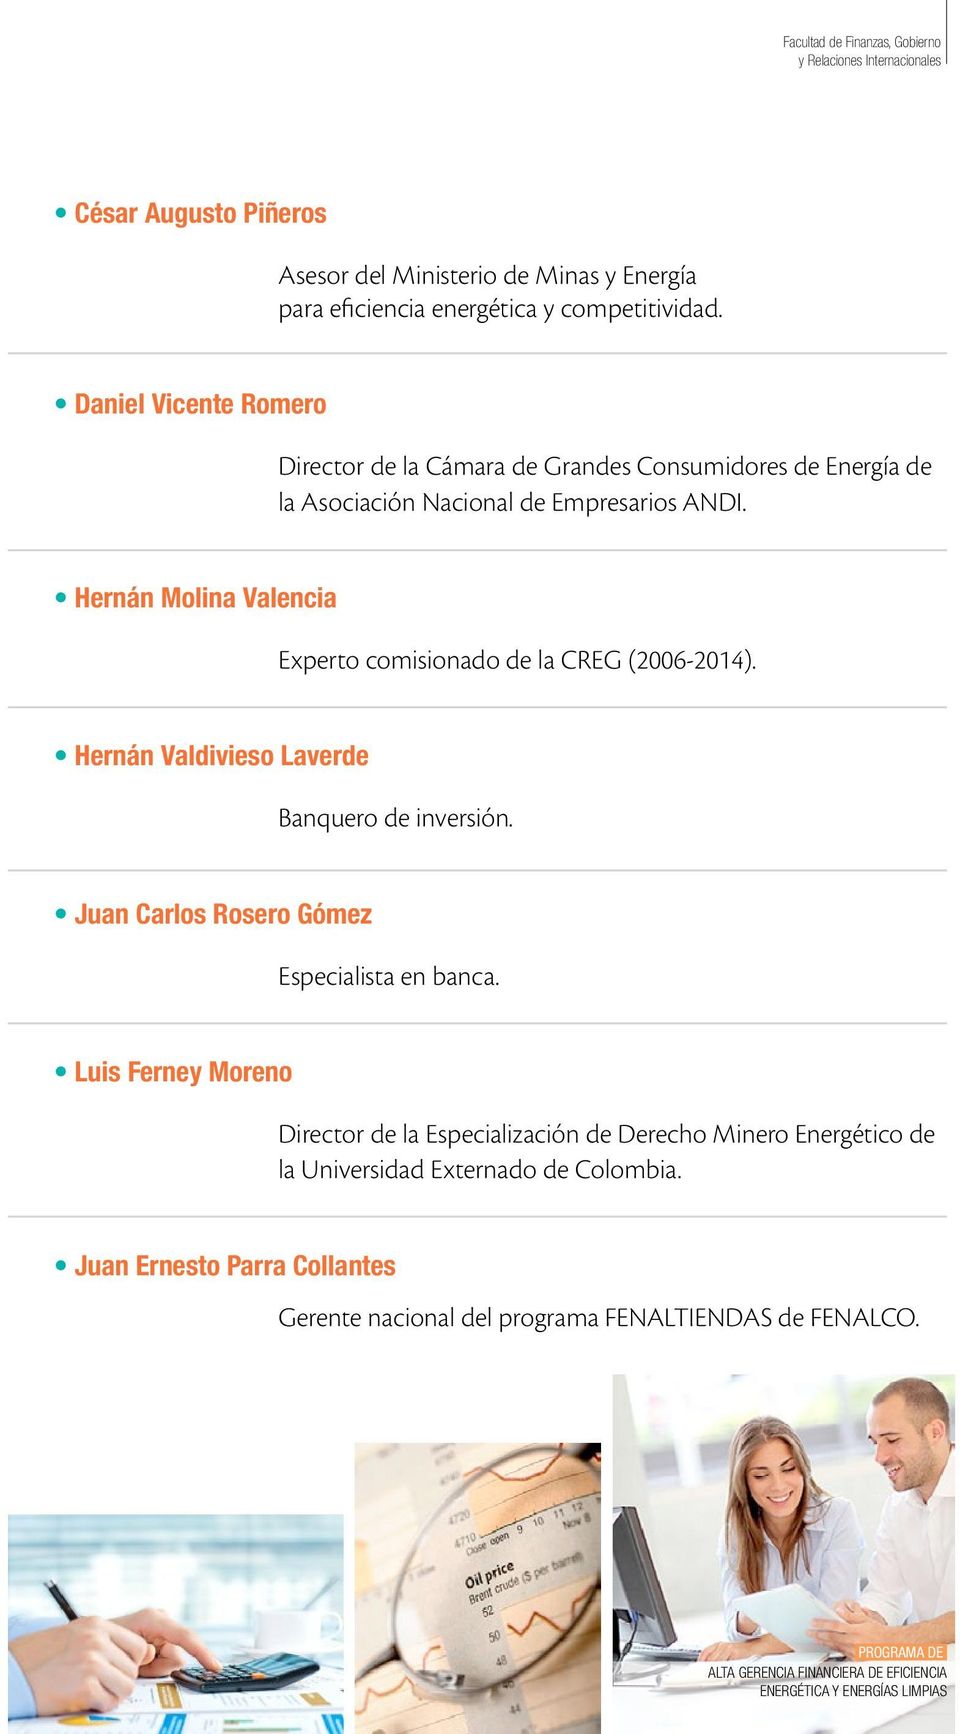 Hernán Molina Valencia Experto comisionado de la CREG (2006-2014). Hernán Valdivieso Laverde Banquero de inversión. Juan Carlos Rosero Gómez Especialista en banca.